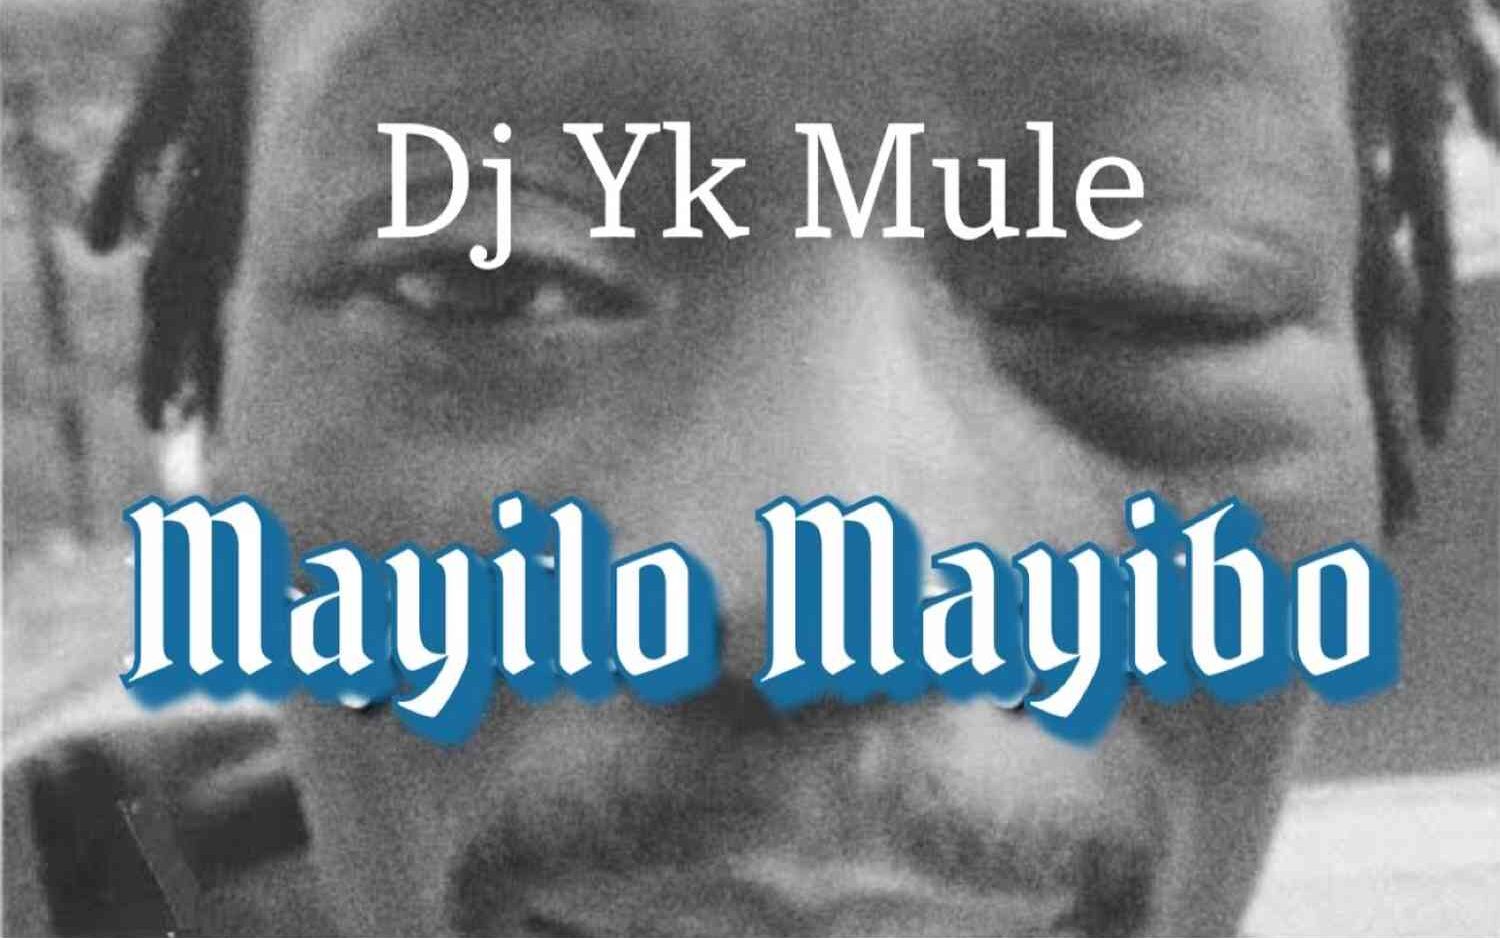 Mayilo-Mayibo-DJ-Yk-Mule